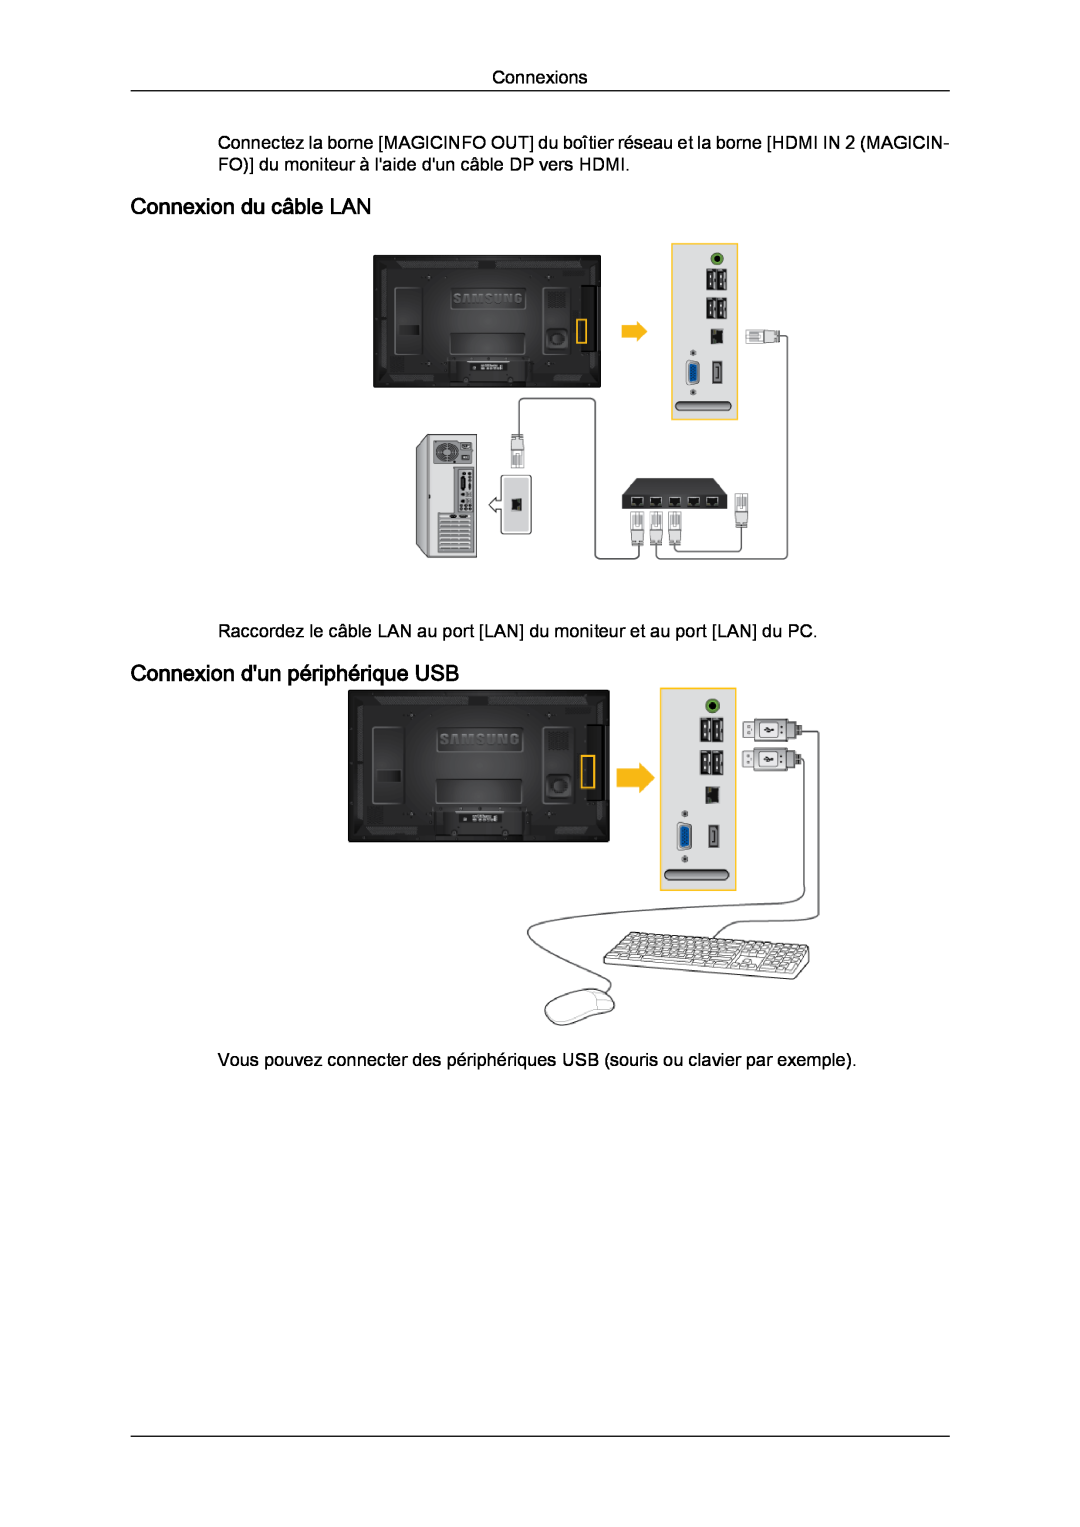 Samsung LH40CRPMBC/EN, LH46CRPMBD/EN, LH46CRPMBC/EN manual Connexion du câble LAN, Connexion dun périphérique USB, Connexions 